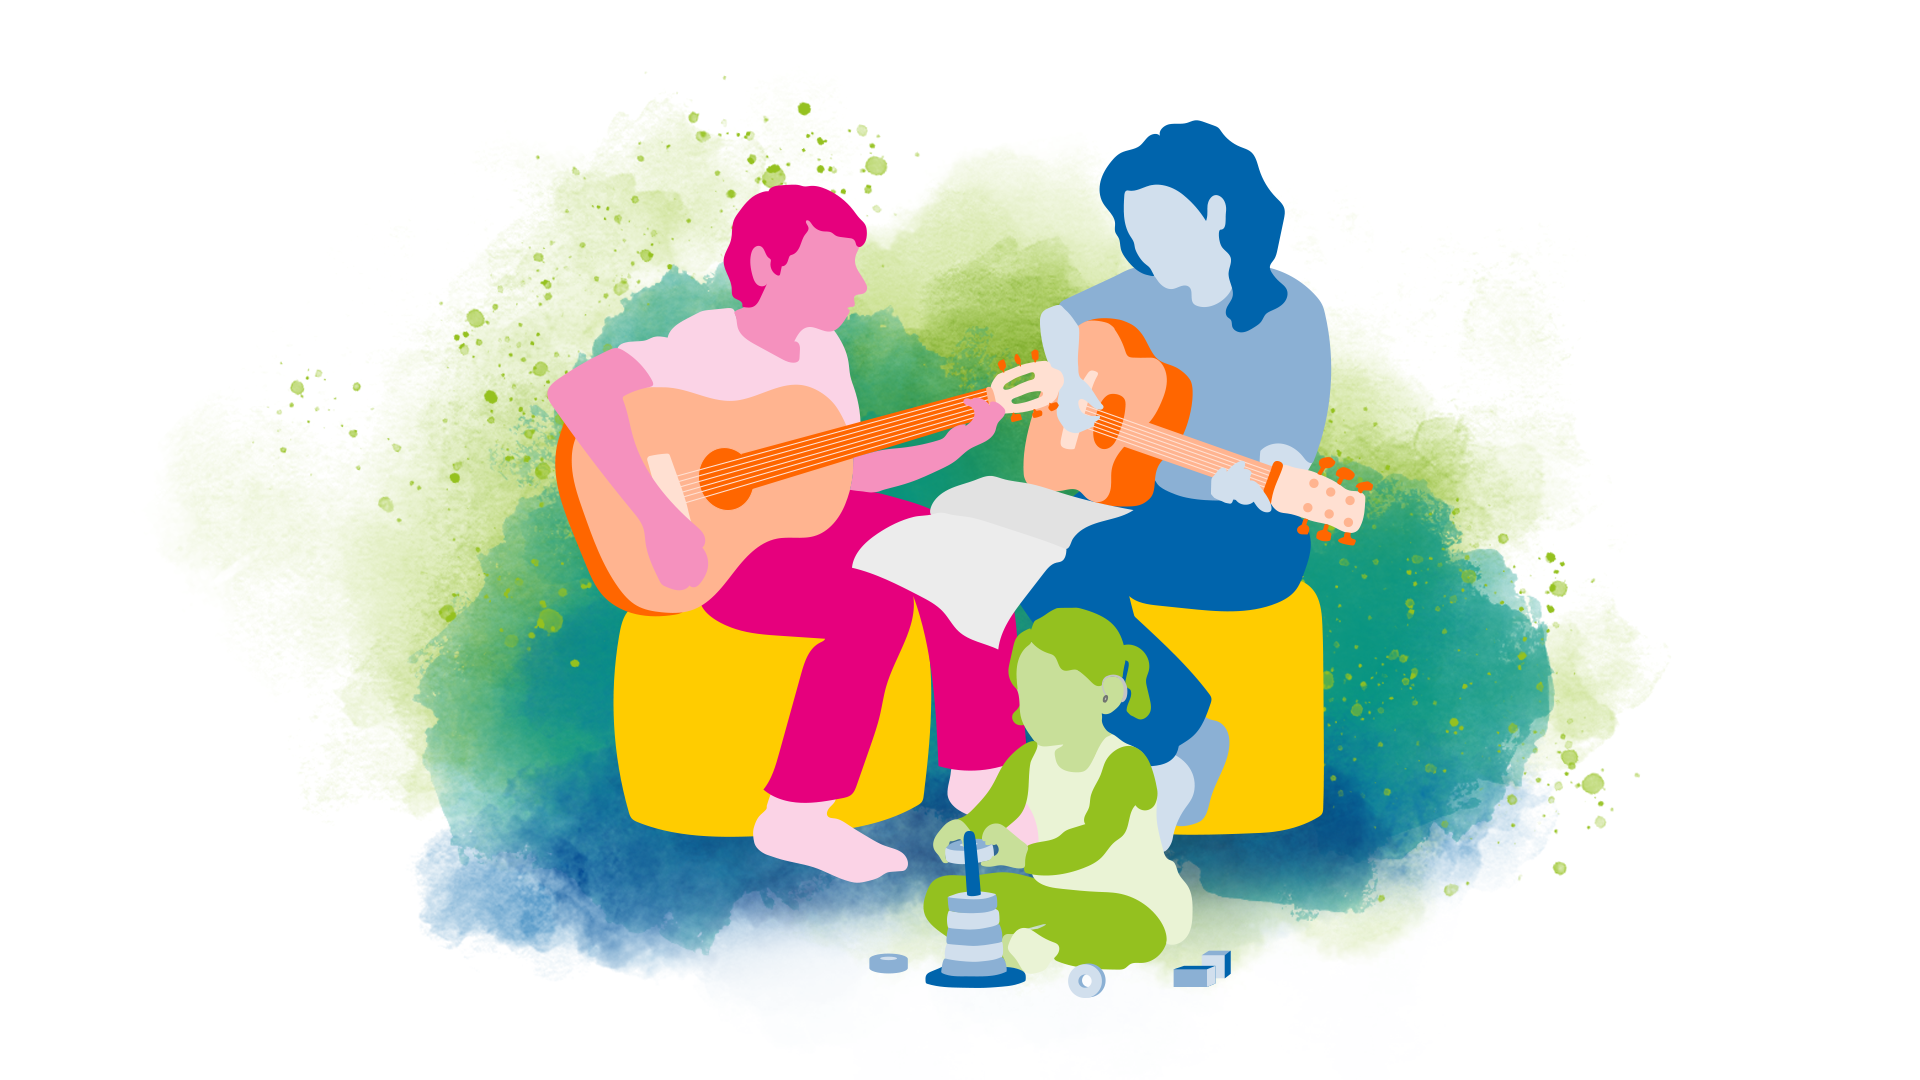 En mamma och en son som sitter ned och spelar gitarr tillsammans medans ett yngre barn leker på golvet nedanför dem.